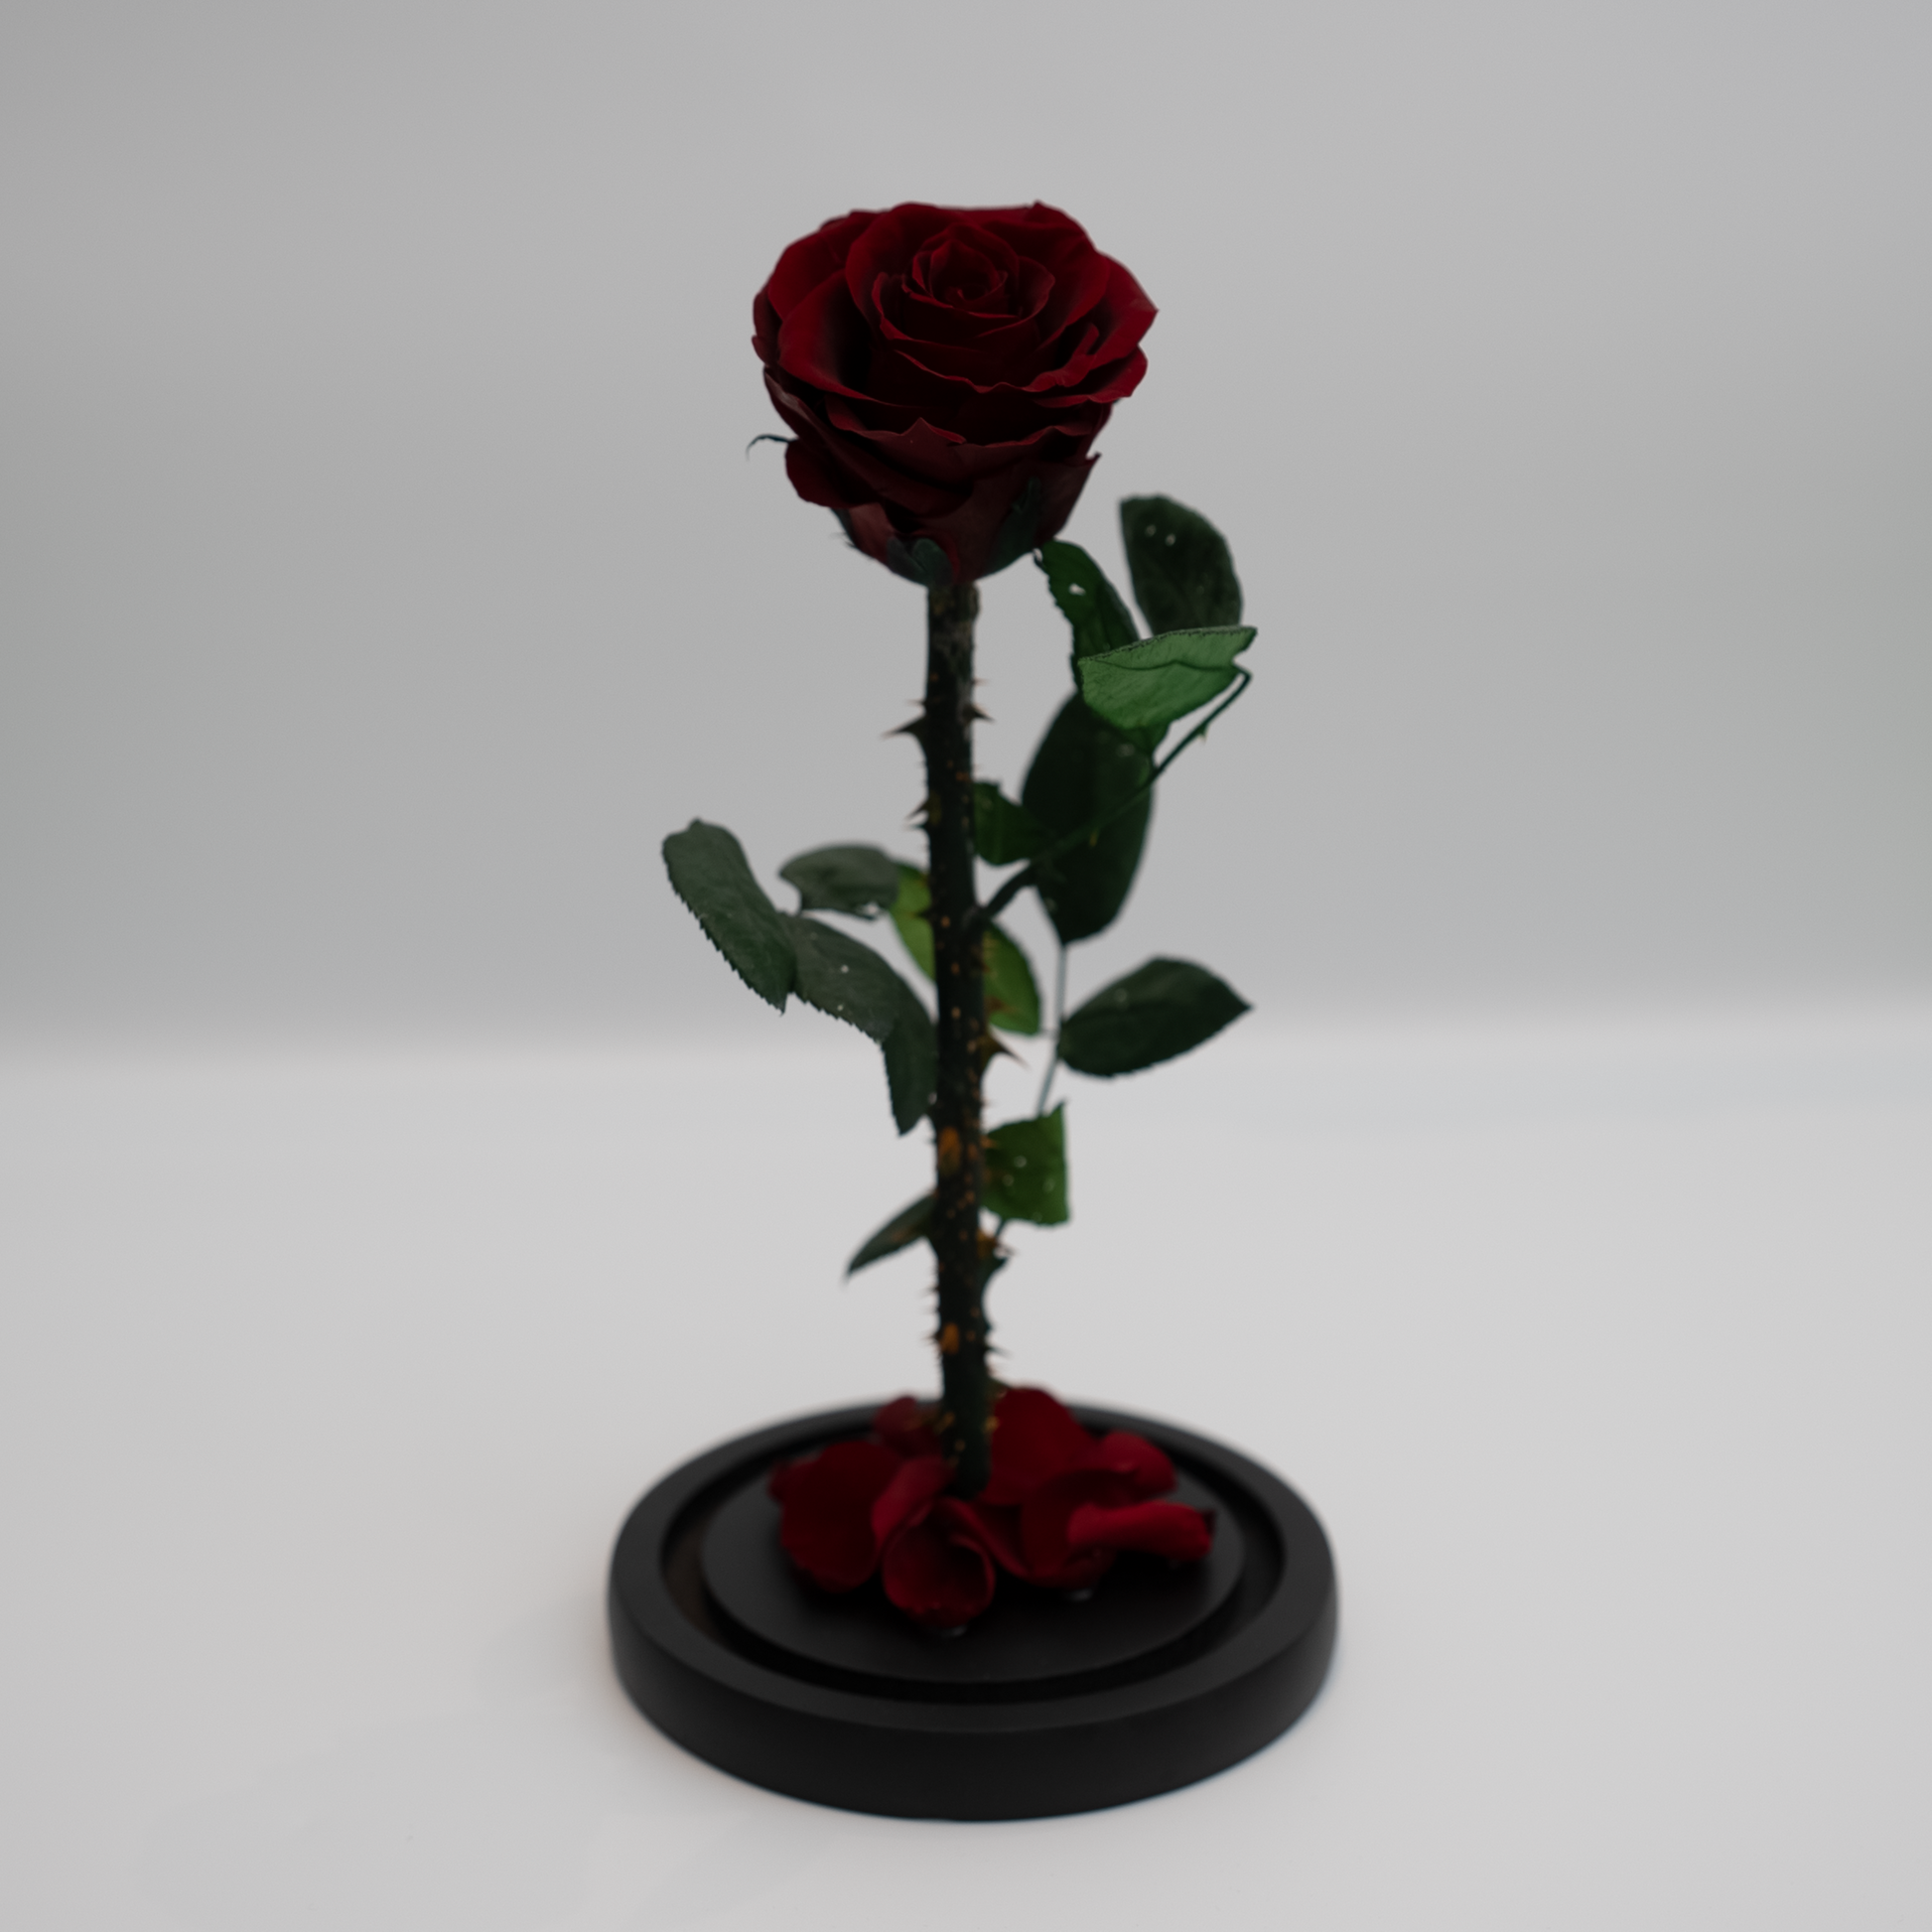 The Little Prince – Roses for Goddess